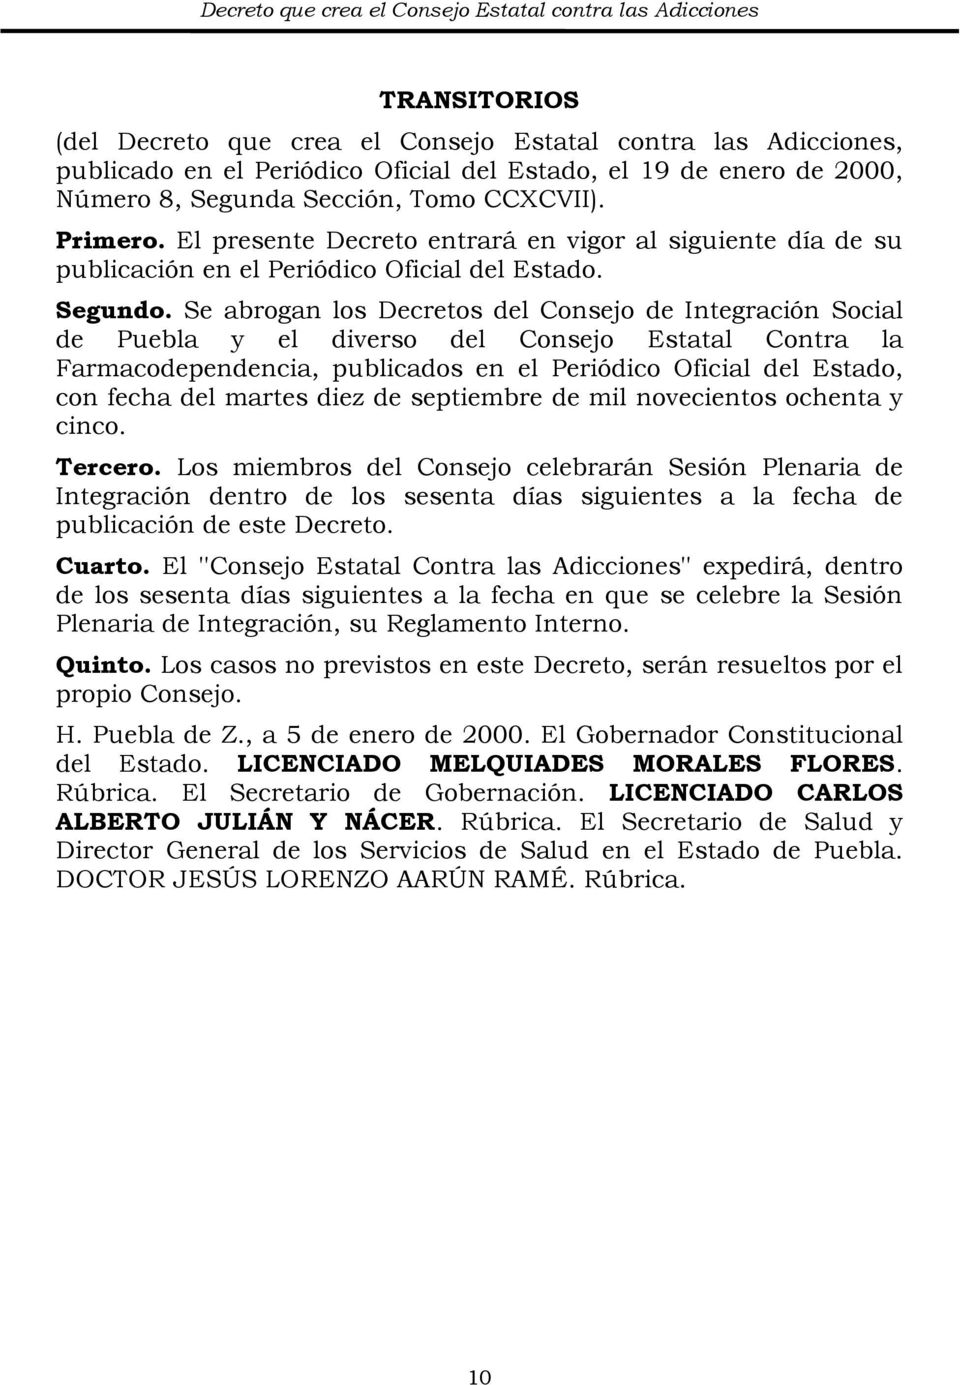 Se abrogan los Decretos del Consejo de Integración Social de Puebla y el diverso del Consejo Estatal Contra la Farmacodependencia, publicados en el Periódico Oficial del Estado, con fecha del martes